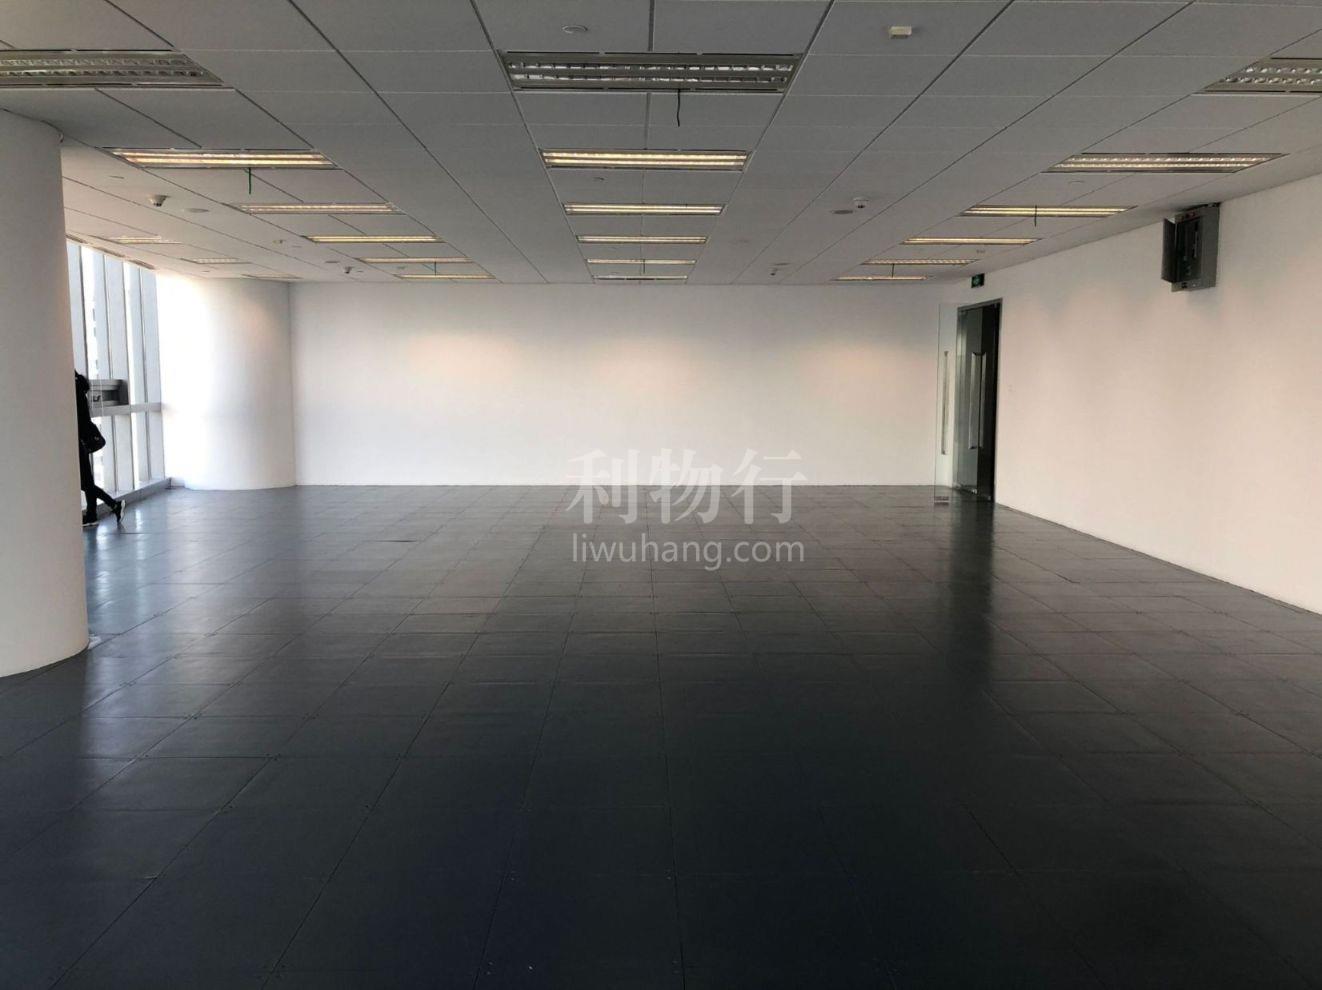 上海环贸广场写字楼405m2办公室9.50元/m2/天 中等装修